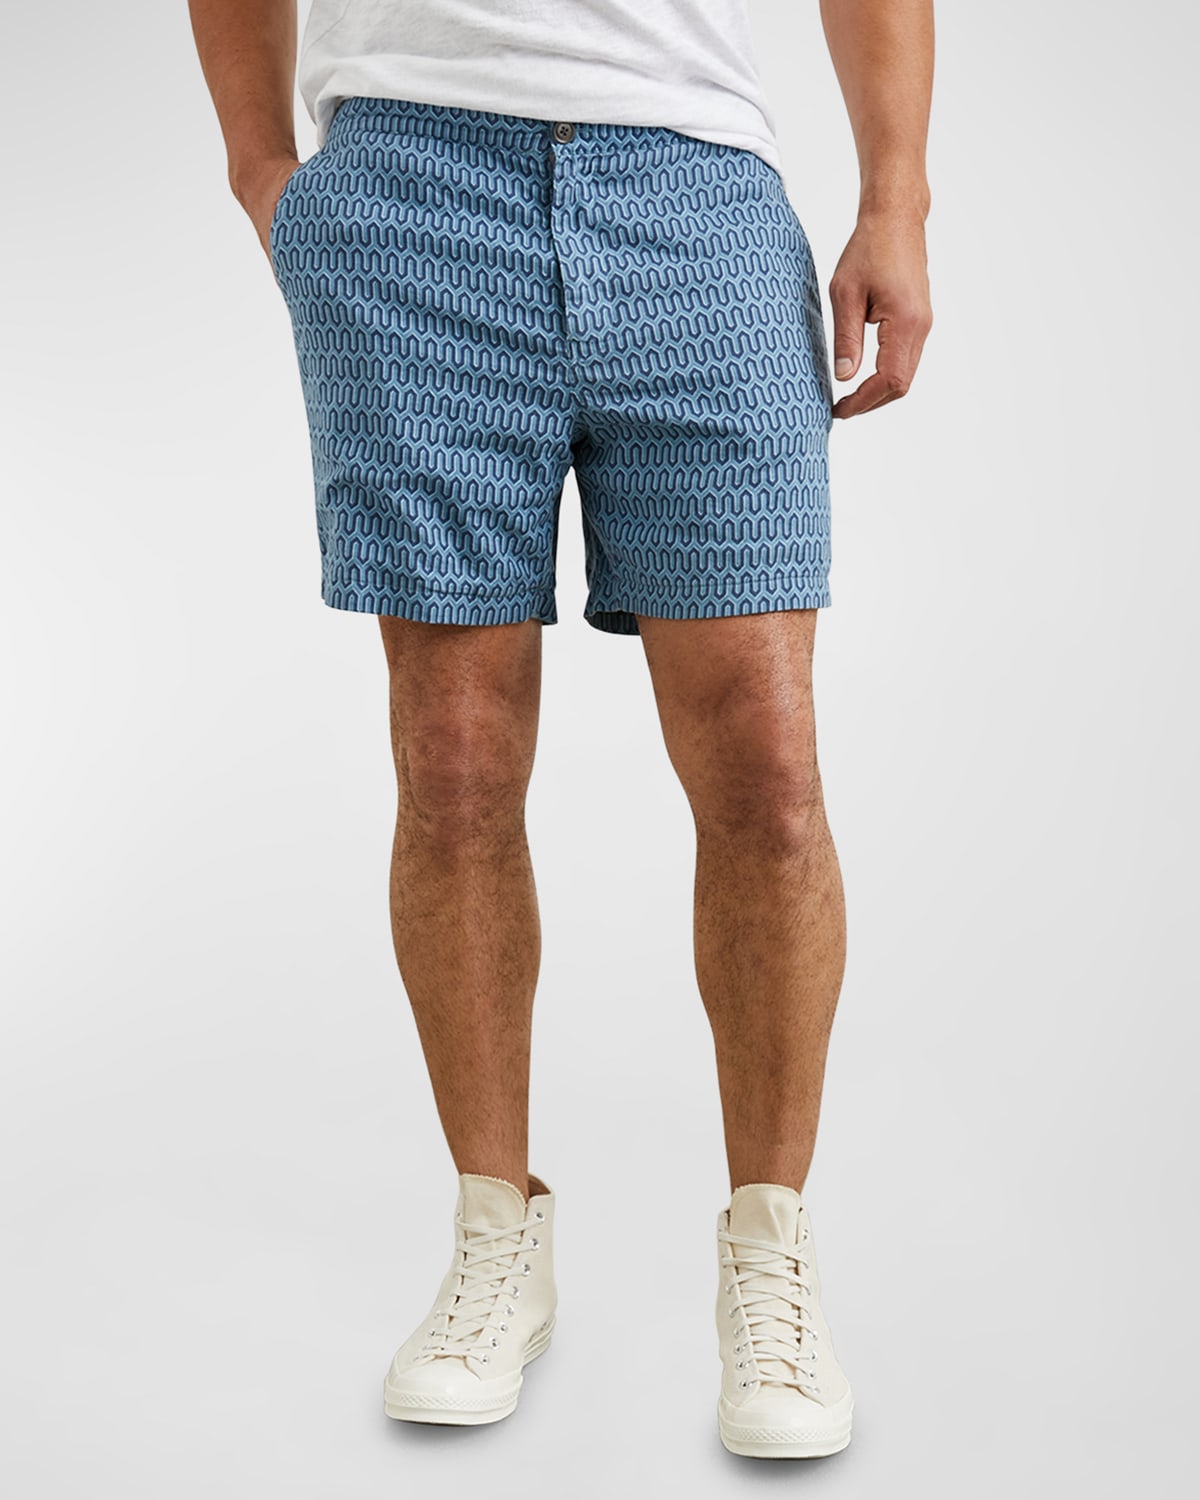 Men's Sona Patterned Shorts